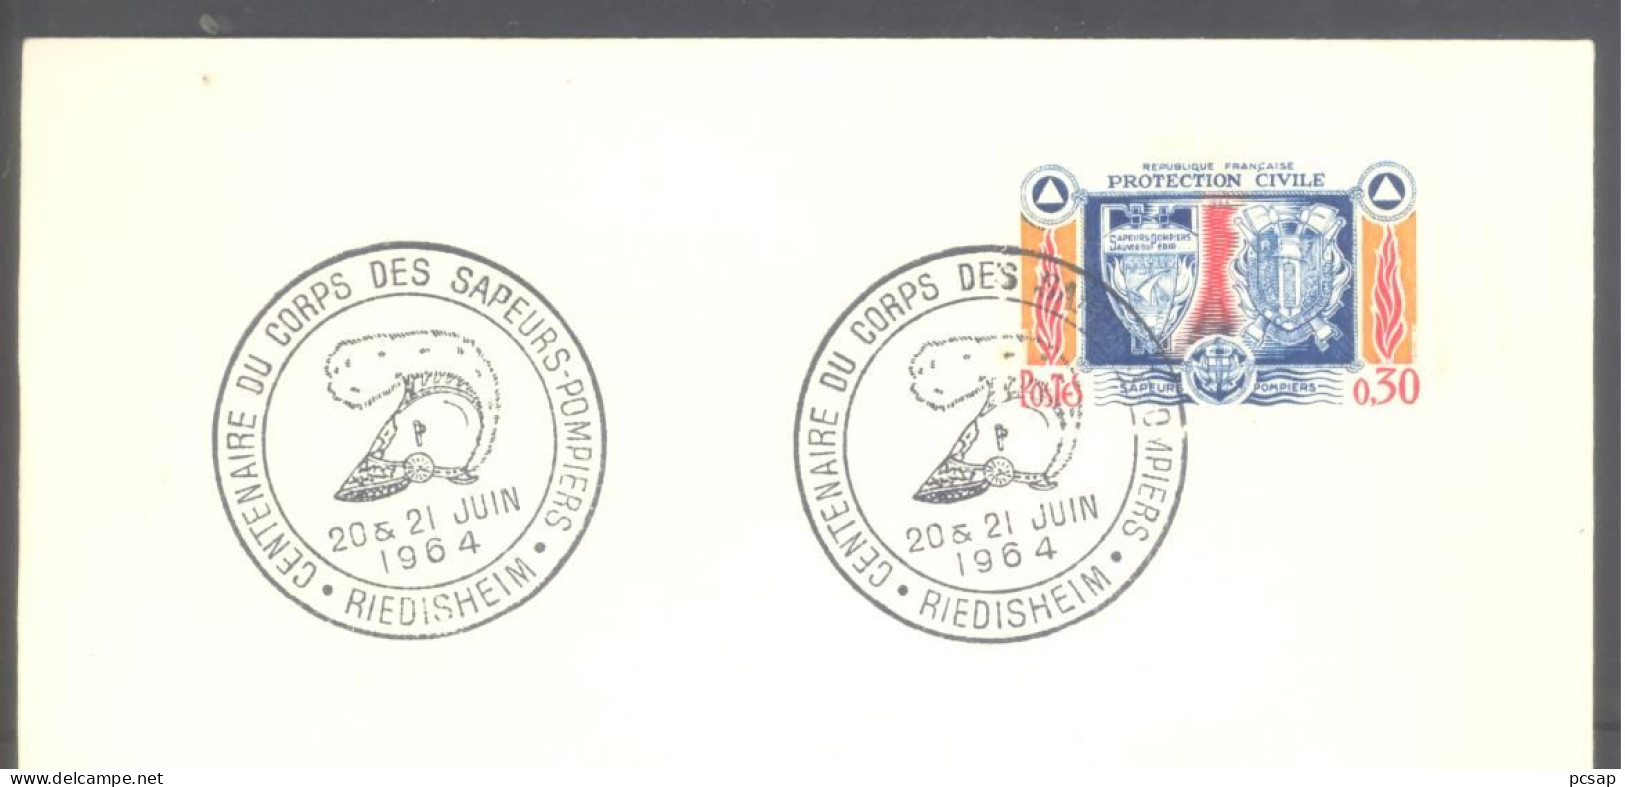 RIEDISHEIM (Centenaire Du Corps Des Sapeurs-pompiers) (sur Enveloppe Entière) - Cachets Commémoratifs